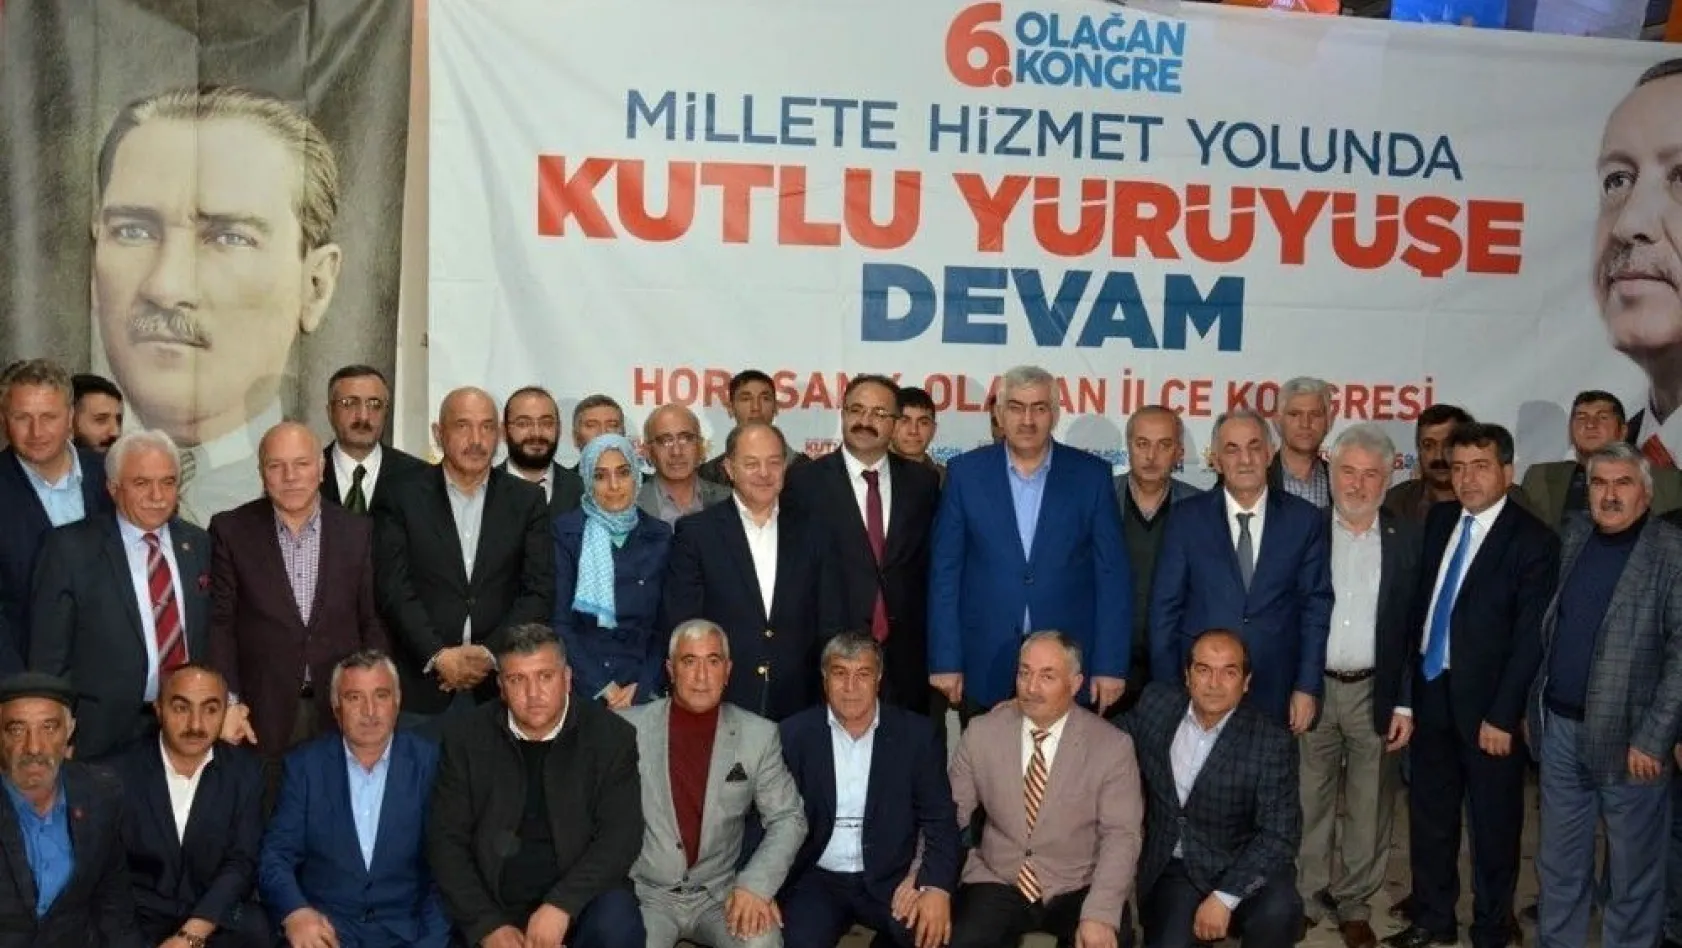 Erzurum AK Parti'de 4 ilçenin 6. olağan kongresi yapıldı
